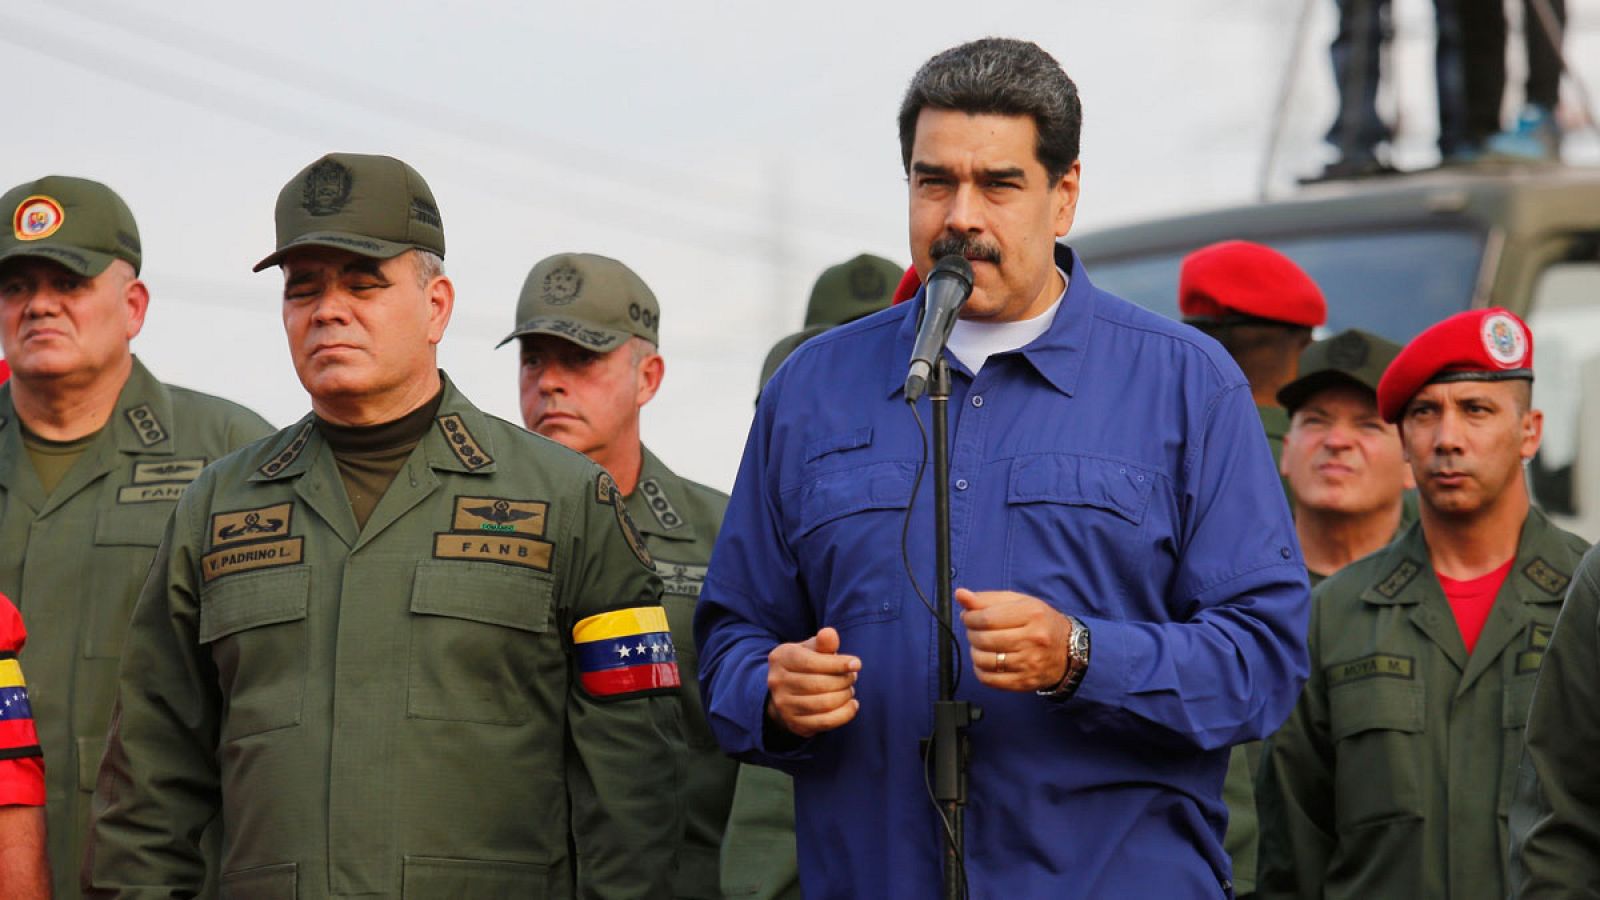 Fotografía cedida por la oficina de prensa de Miraflores, donde se observa al presidente de Venezuela, Nicolás Maduro (2d), junto a su ministro de Defensa, Vladimir Padrino (i), durante un acto con militares en el estado Aragua (Venezuela).